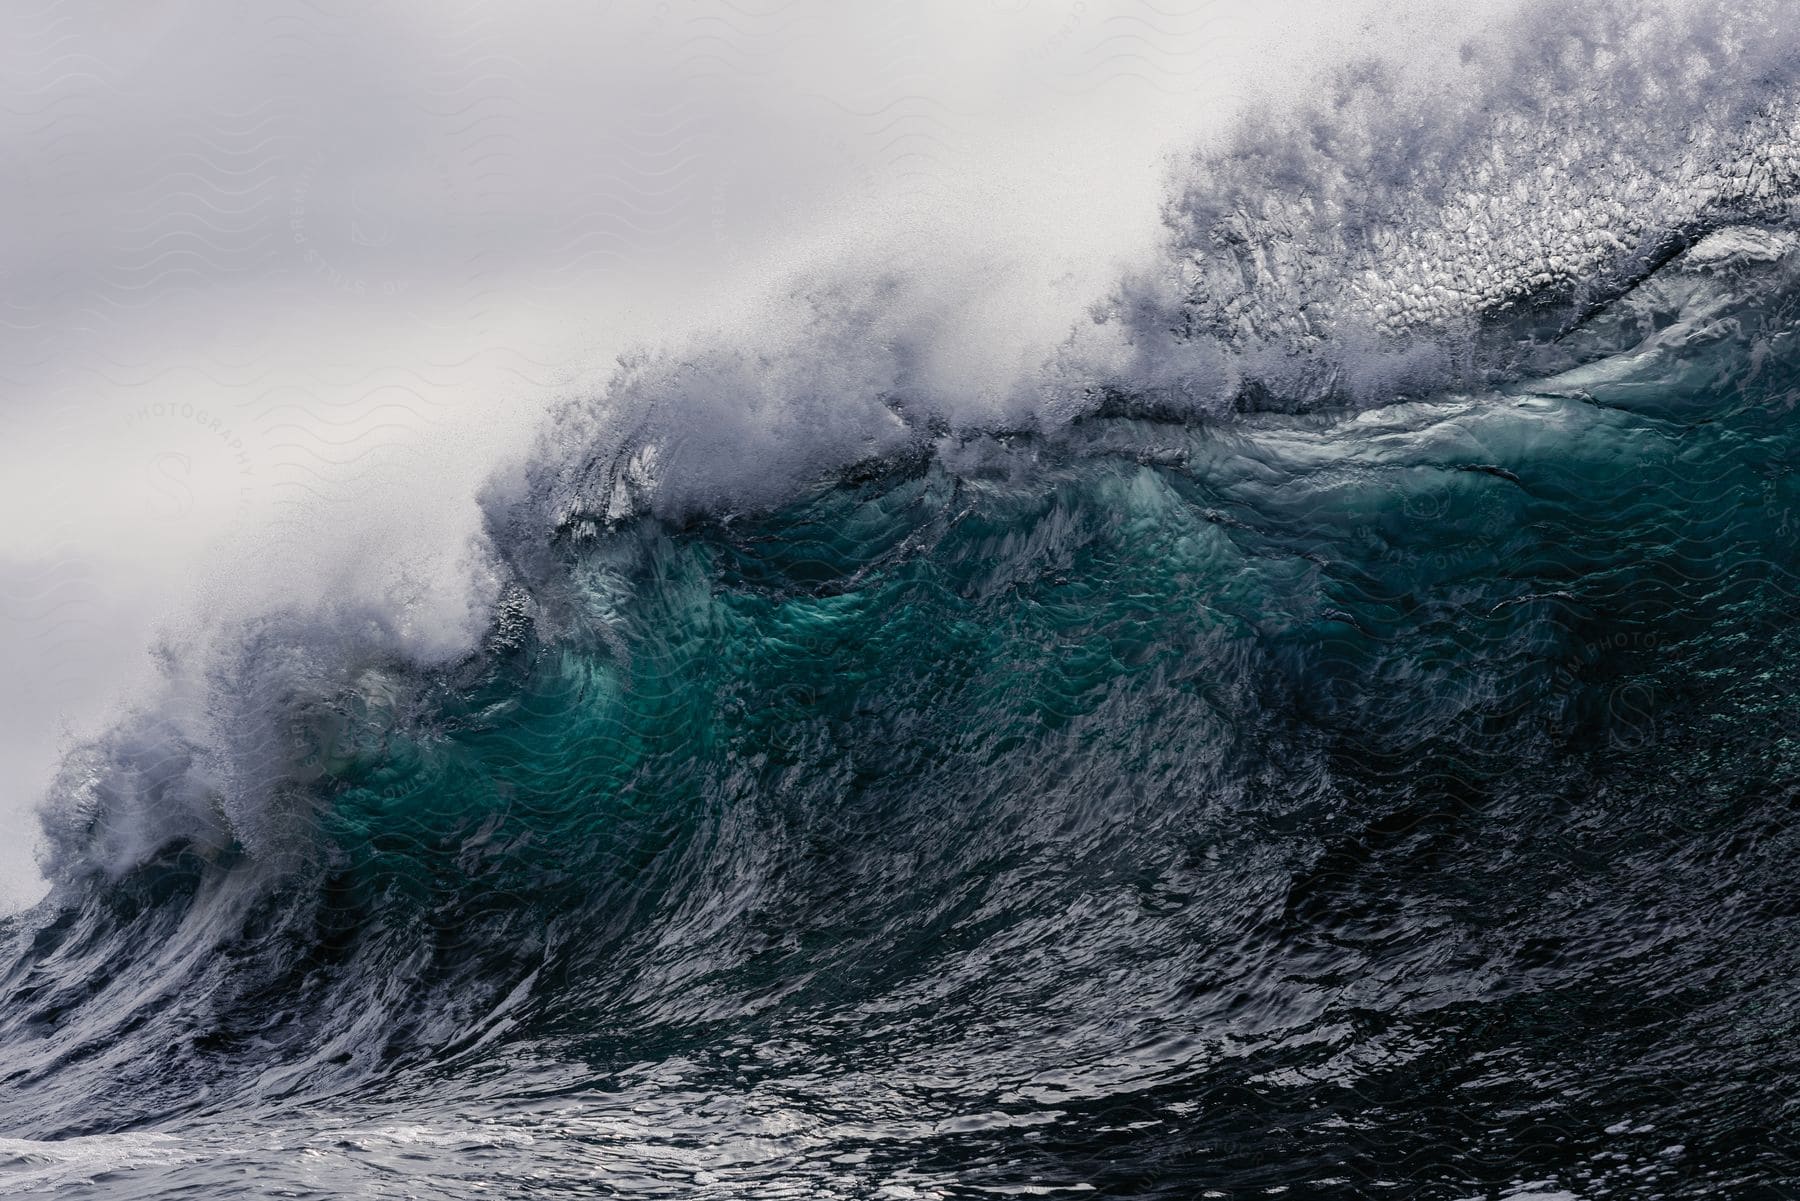 A wave breaks in the ocean